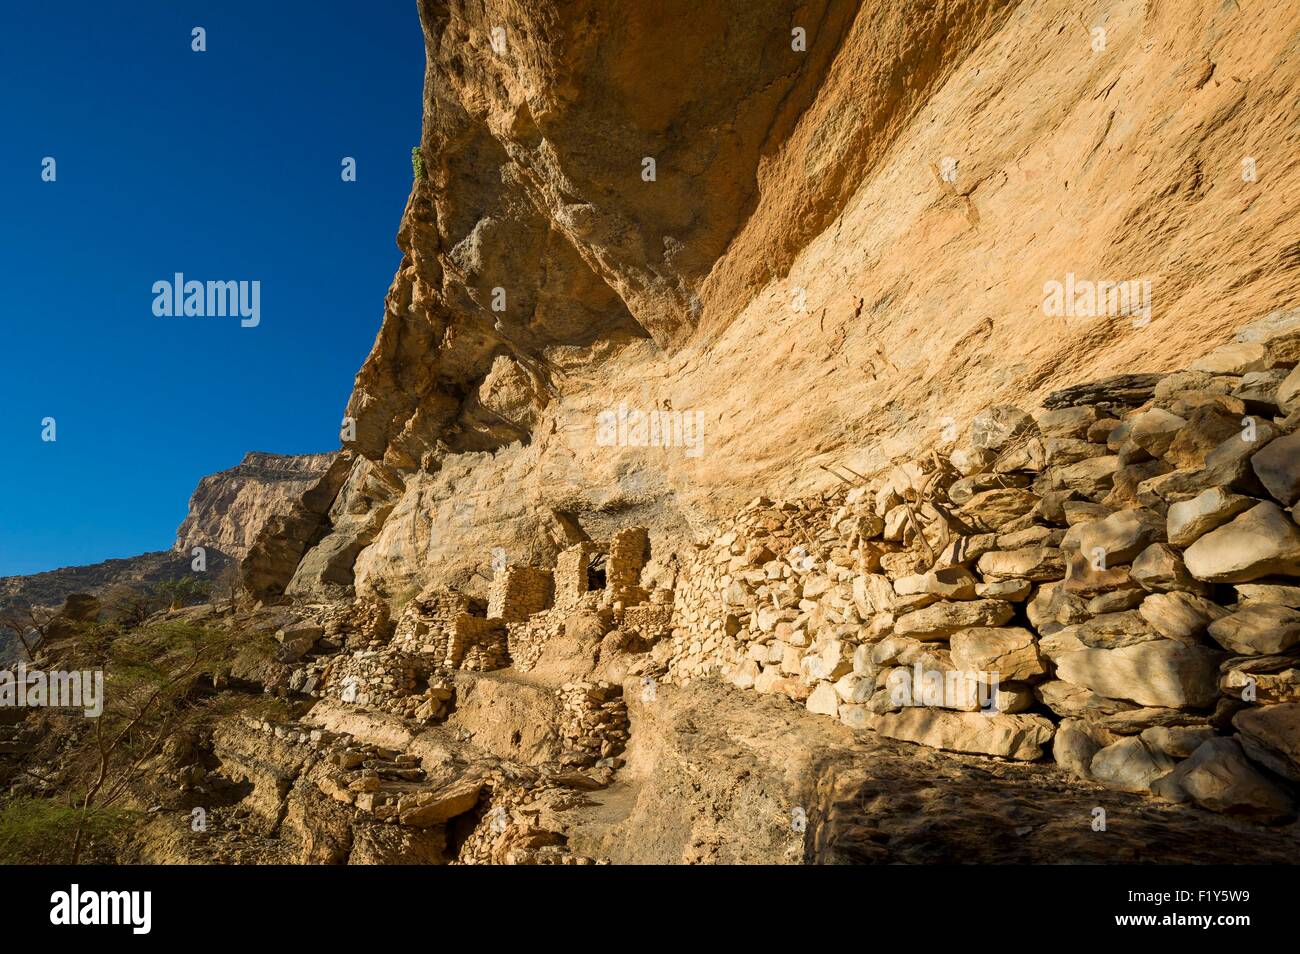 Oman, Djebel Shams, Oman Grand Canyon, Al Nakhr cliff, come brs abbandonato insediamenti rupestri Foto Stock